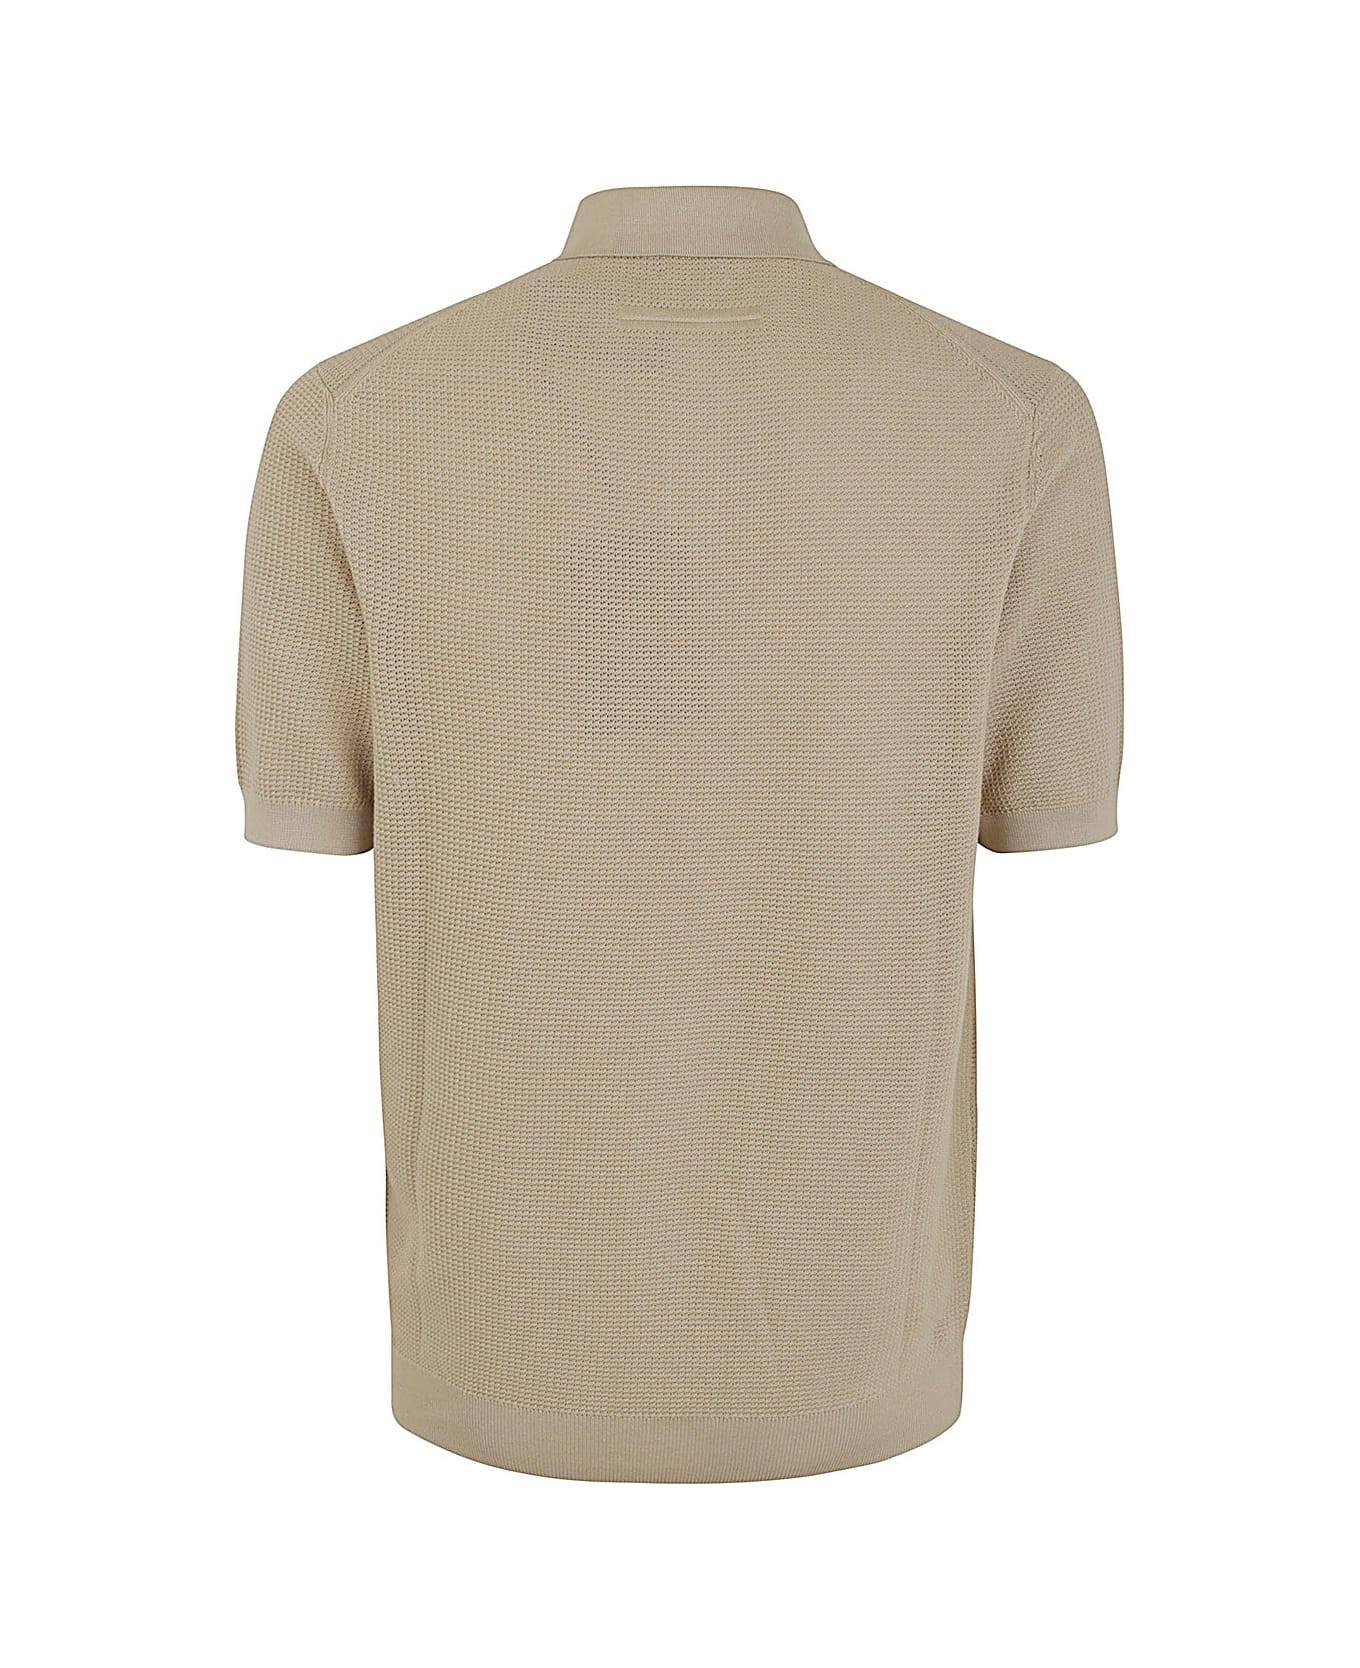 Zegna Premium Cotton Polo - Beige ポロシャツ